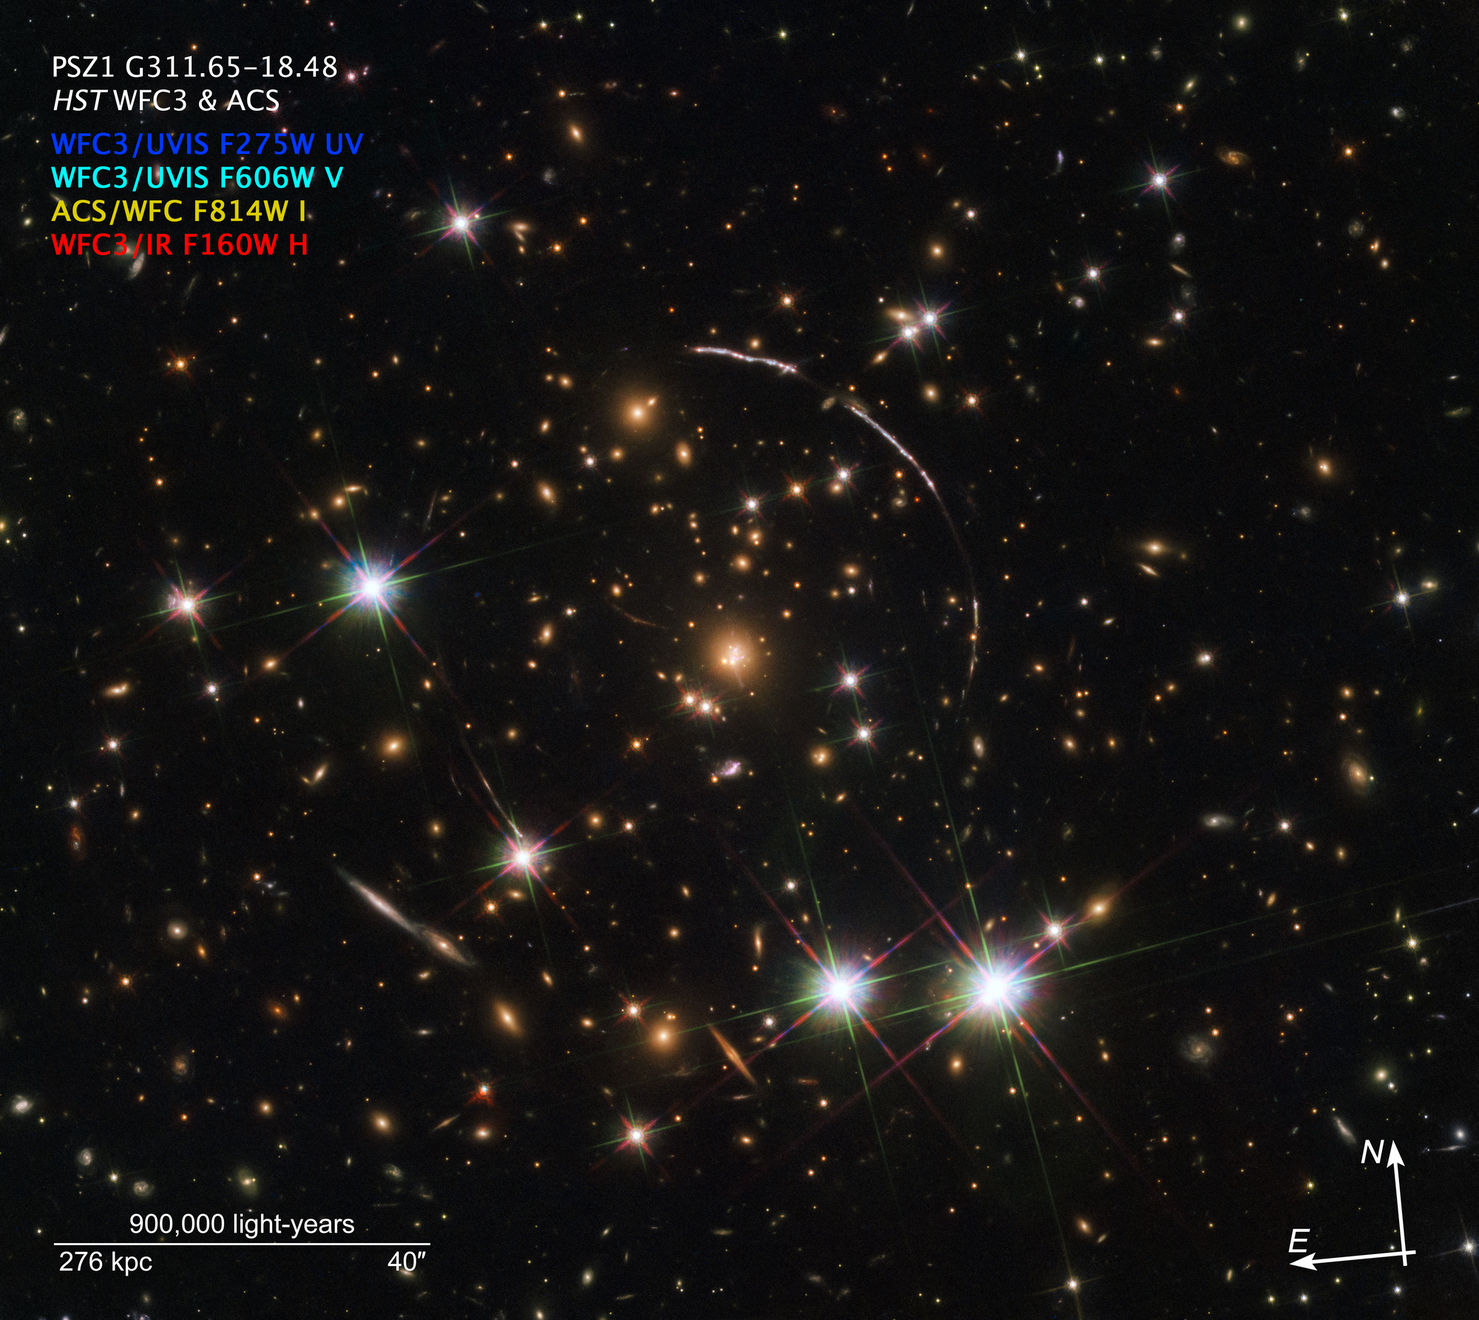 Na ilustracji: Widać masywną gromadę galaktyk PSZ1 G311.65-18.48 w gwiazdozbiorze Rajskiego Ptaka (łac. Apus), od której światło biegło do nas 4,6 miliarda lat (z=0,443). Mniej więcej na zewnętrznej granicy tej gromady widać cztery łuki świetlne, które są zwielokrotnionymi obrazami tej samej galaktyki zwanej potocznie Błyskiem Słońca - widzimy ją tak, jak wyglądała około 11 miliardów lat temu (z=2,37). Zdjęcie zostało zrobione przez Teleskop Hubble’a w czterech barwach w zakresie optycznym i podczerwieni (długości fali λ~0,275-1,6μm). W galaktyce Błysk Słońca zaobserwowano najjaśniejszą znaną nam gwiazdę zmienną typu LBV, którą nazwano Godzillą. Źródło: ESA/Hubble, NASA, Rivera-Thorsen et al.